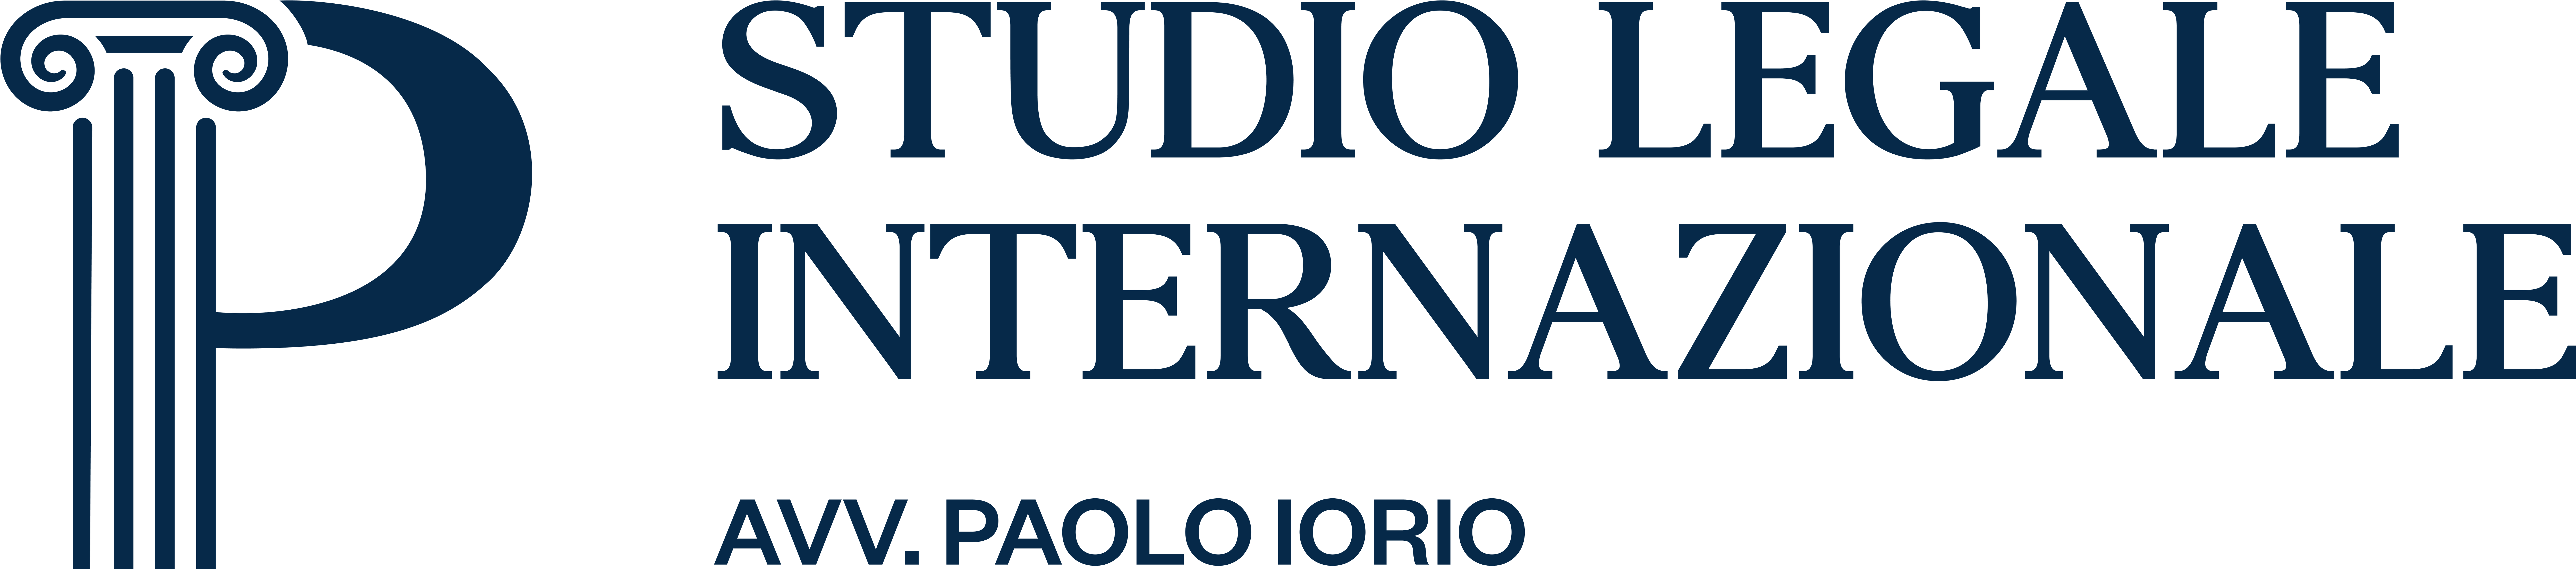 Studio Legale internazionale avv. Paolo iorio